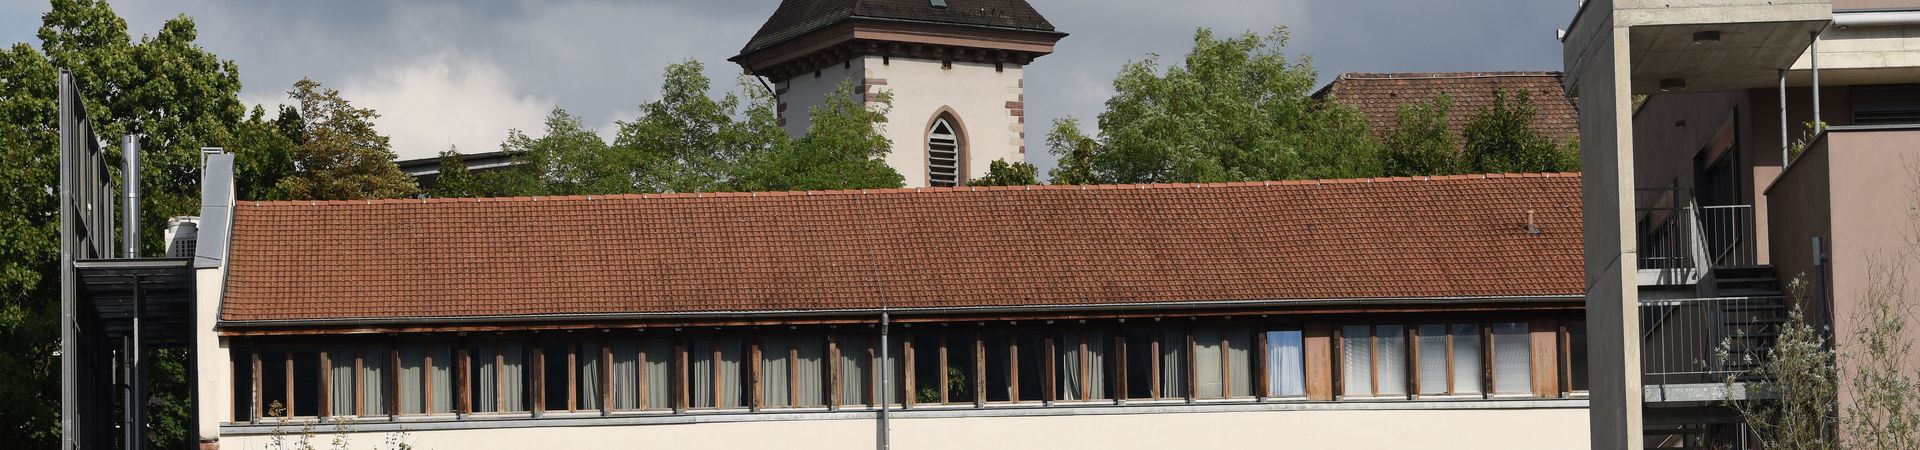 Blick auf Westseite mit Dach, Ausschnitt Kirchturm